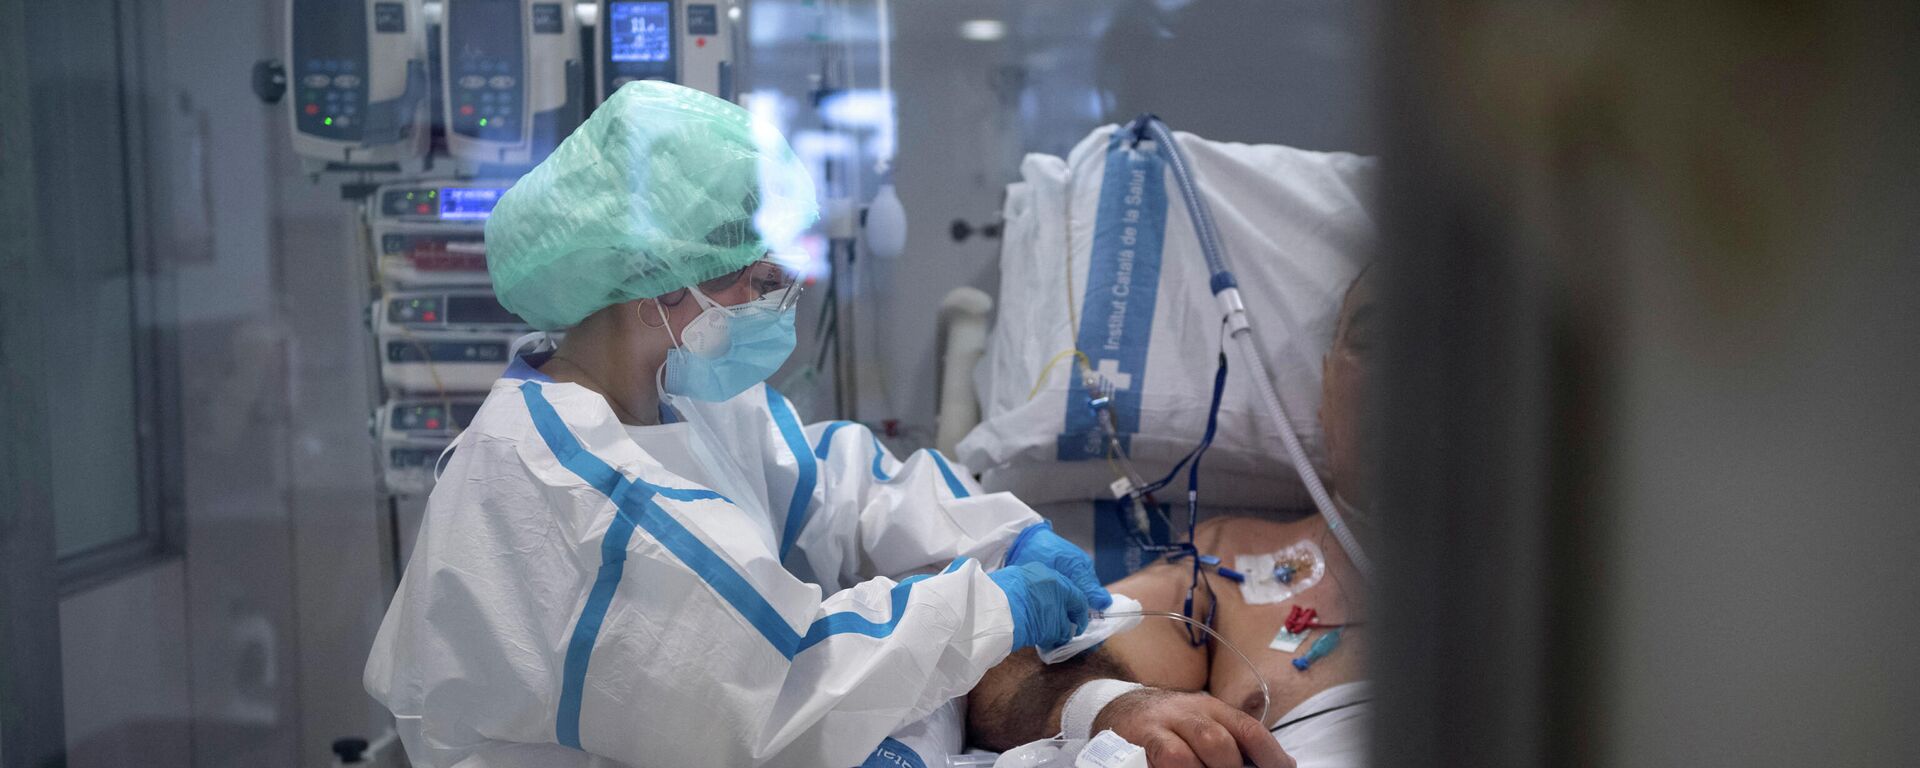 Медицинский работник оказывает помощь пациенту с COVID-19 в больнице - Sputnik Кыргызстан, 1920, 07.02.2022